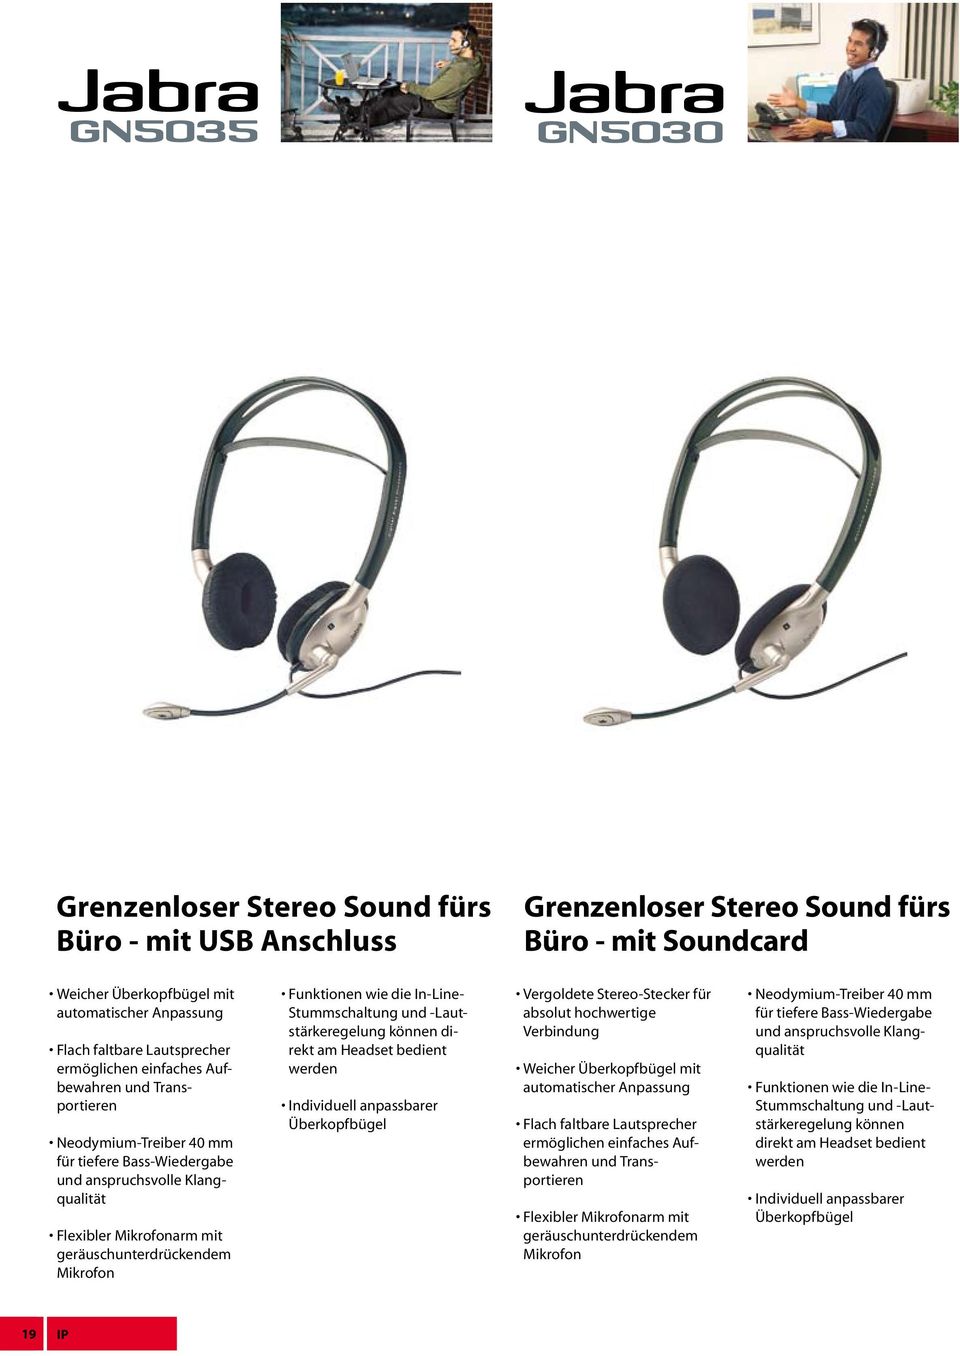 Funktionen wie die In-Line- Stummschaltung und -Lautstärkeregelung können direkt am Headset bedient werden Individuell anpassbarer Überkopfbügel Vergoldete Stereo-Stecker für absolut hochwertige